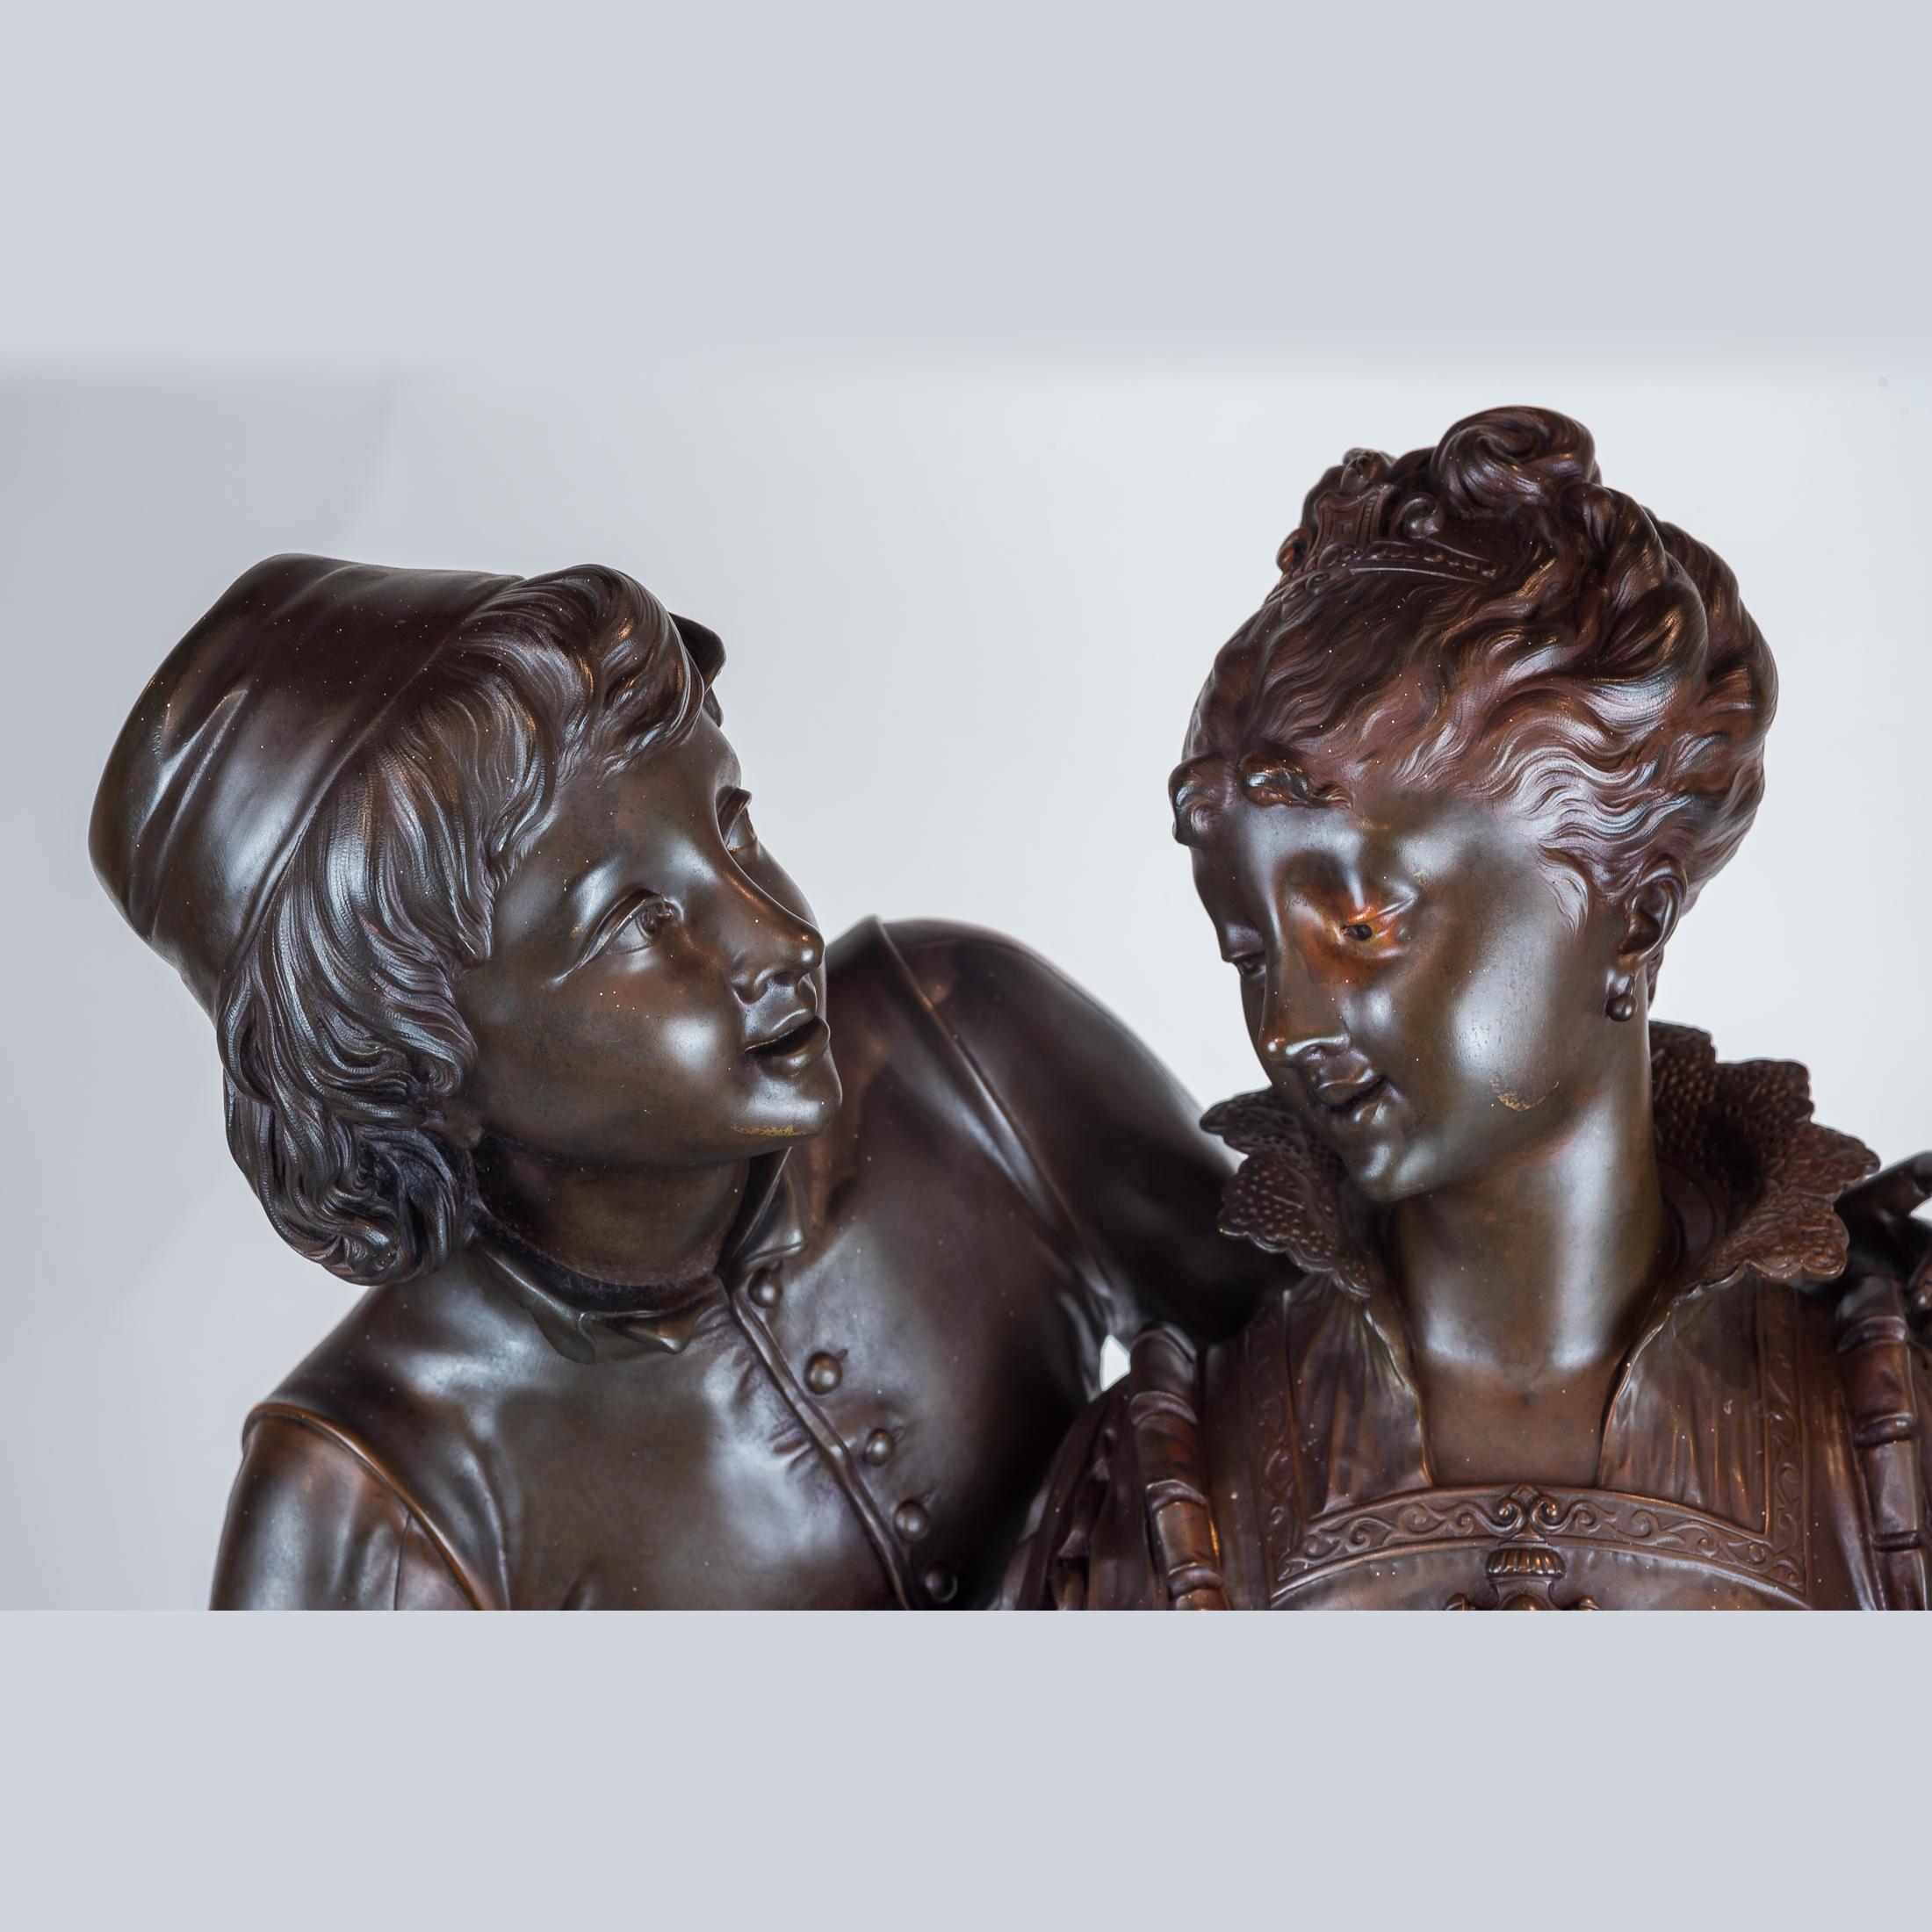 Bronze Sculpture of Two Lovers - Gold Figurative Sculpture by Vincent Desire Faure de Brousse